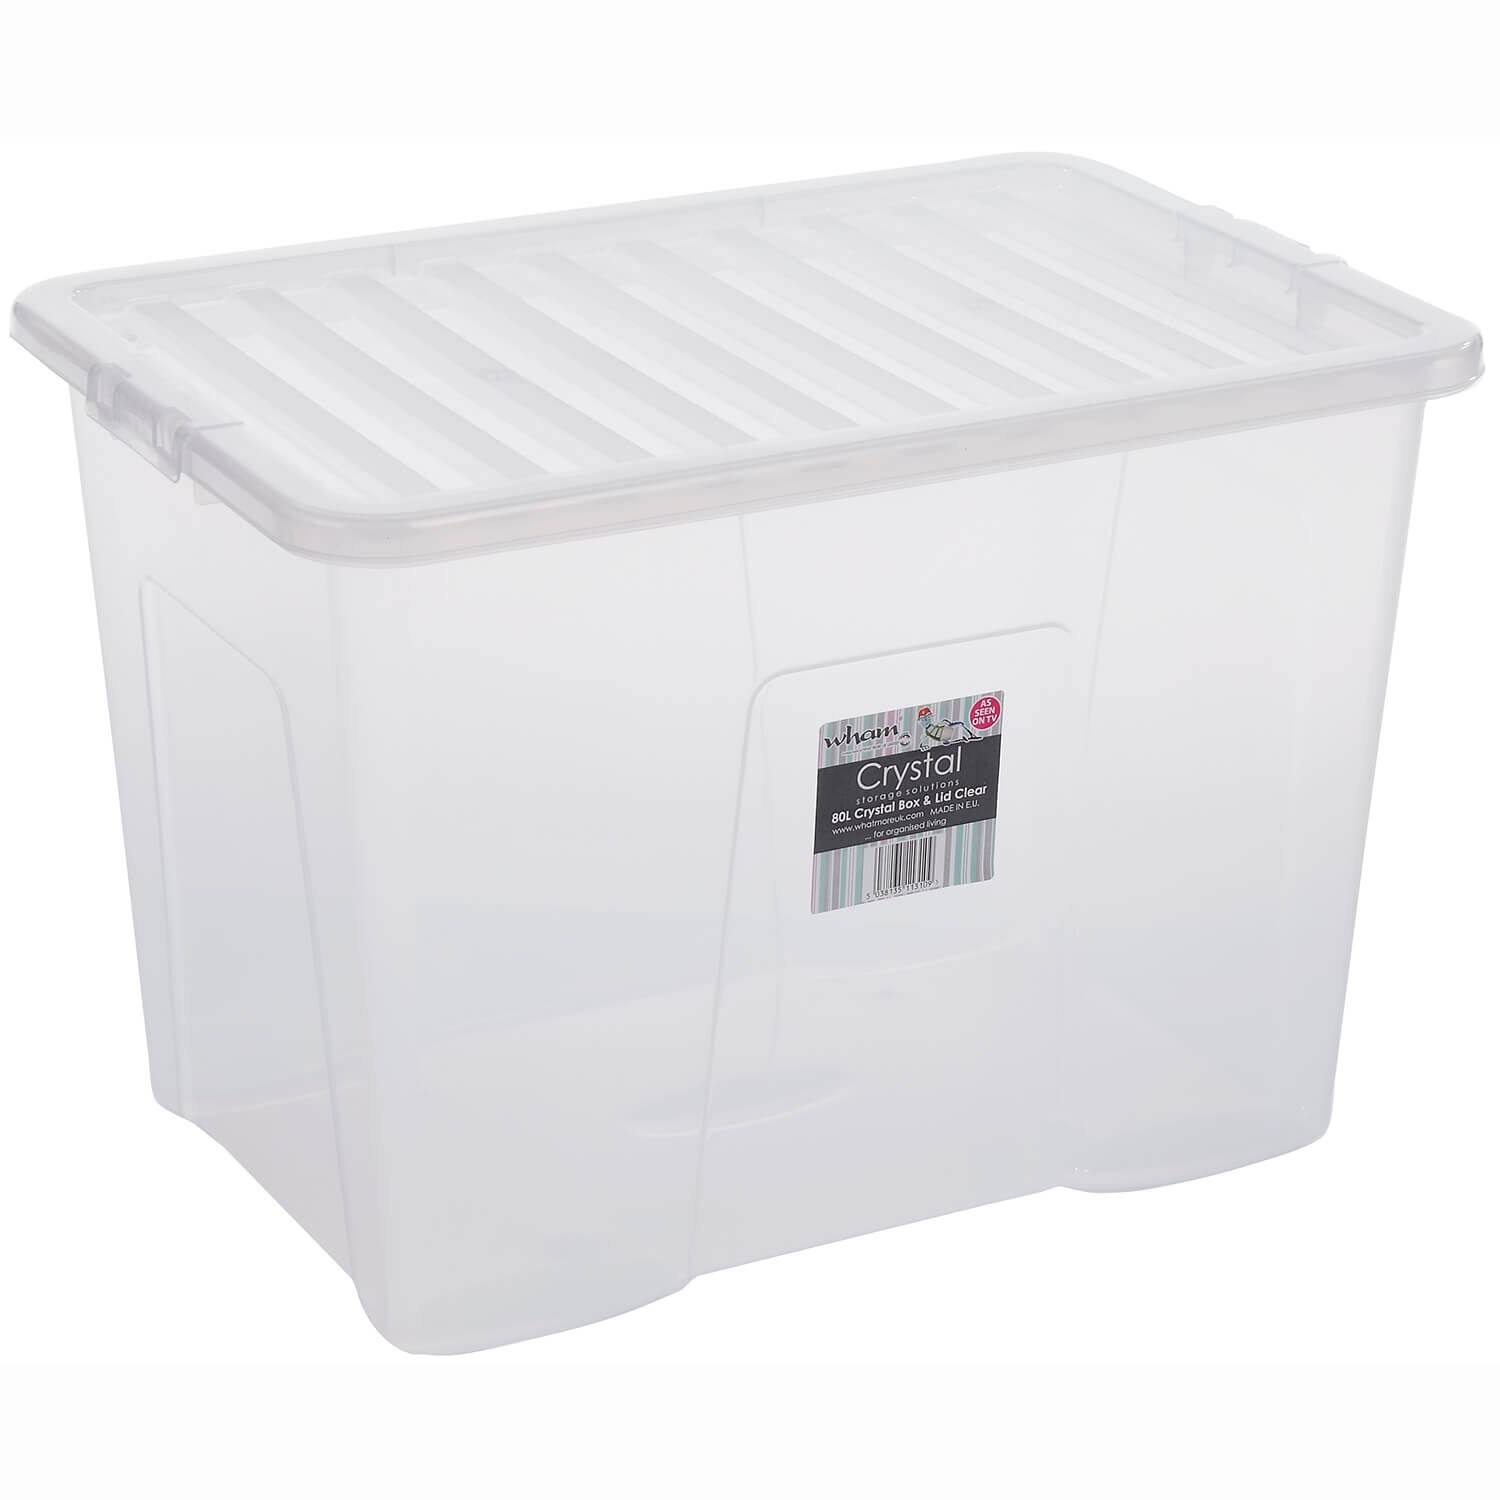 Wham Crystal Storage Box & Lid Clear - 80ltr